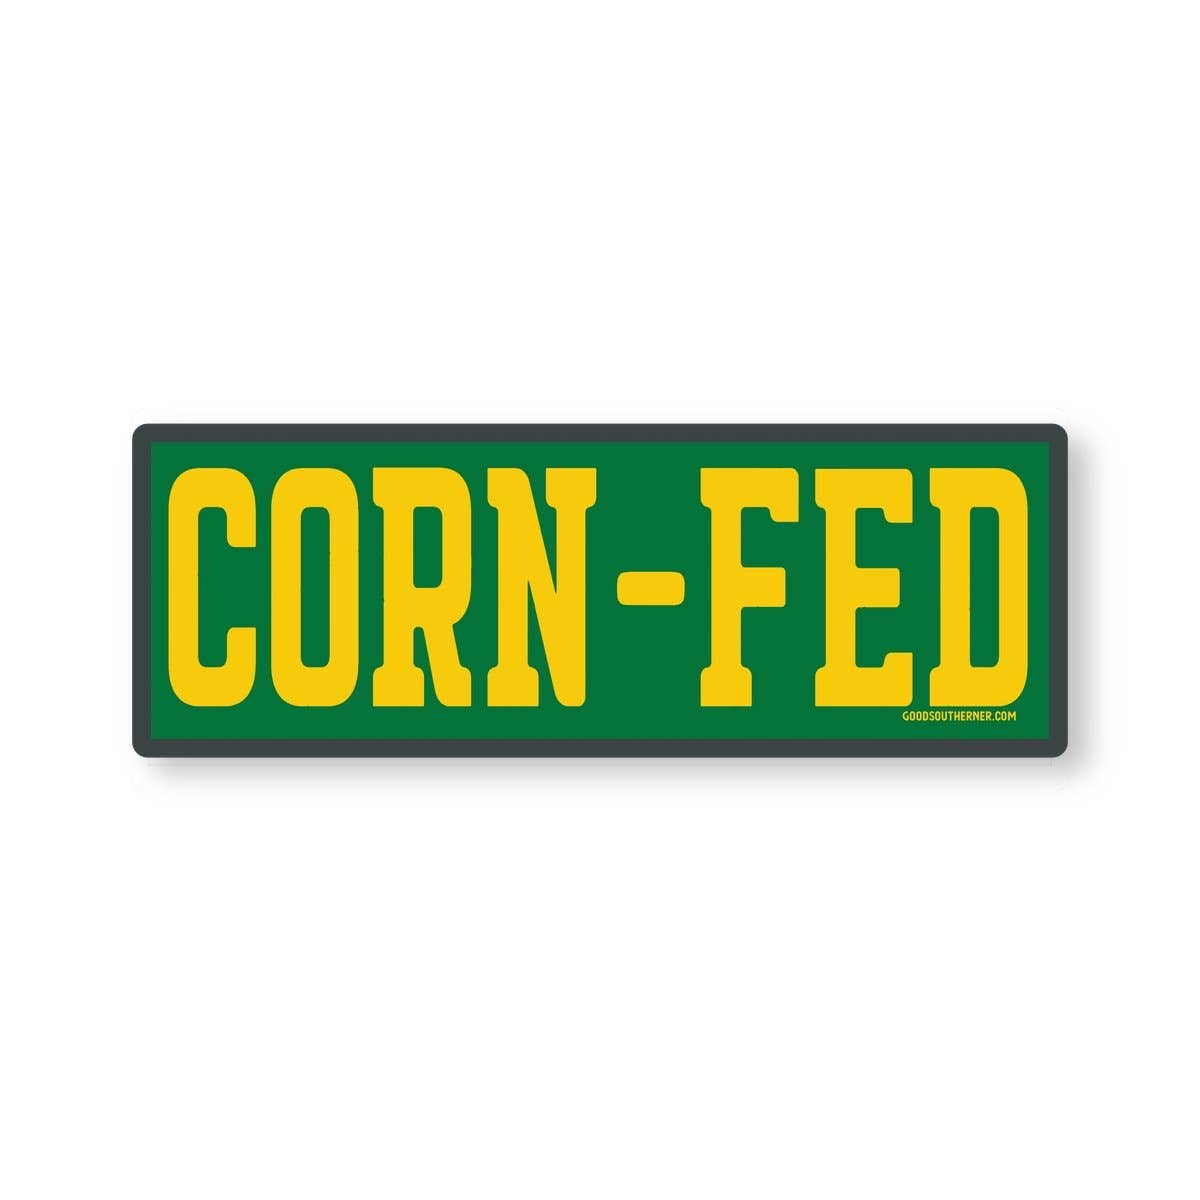 Corn-Fed Sticker | Good Southerner - InRugCo Studio & Gift Shop